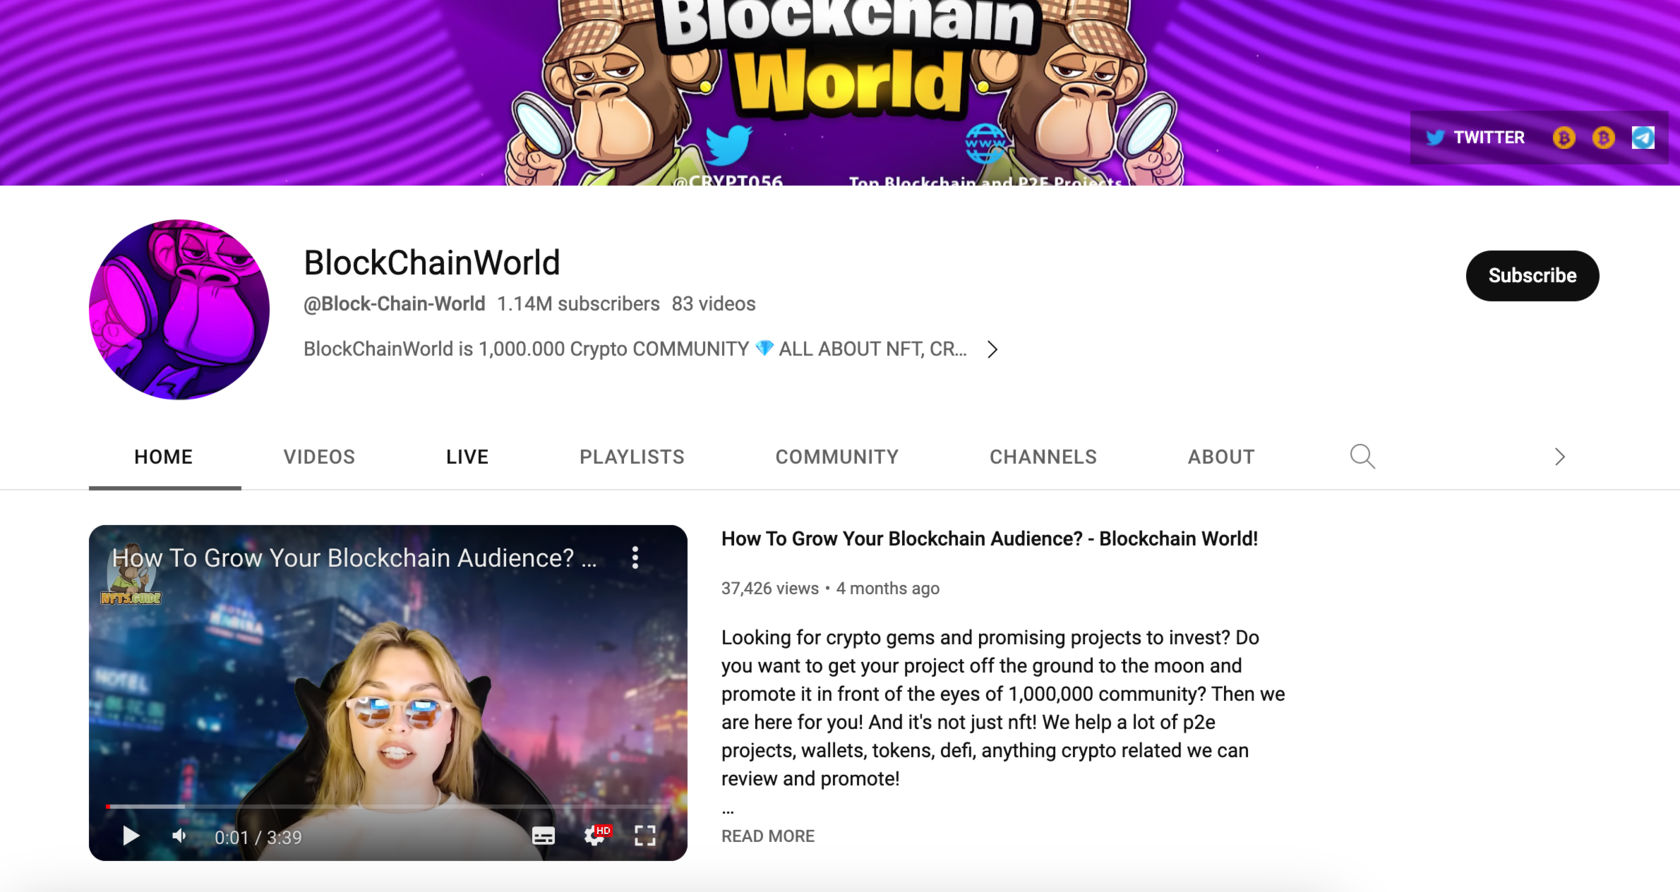 BlockChainWorld